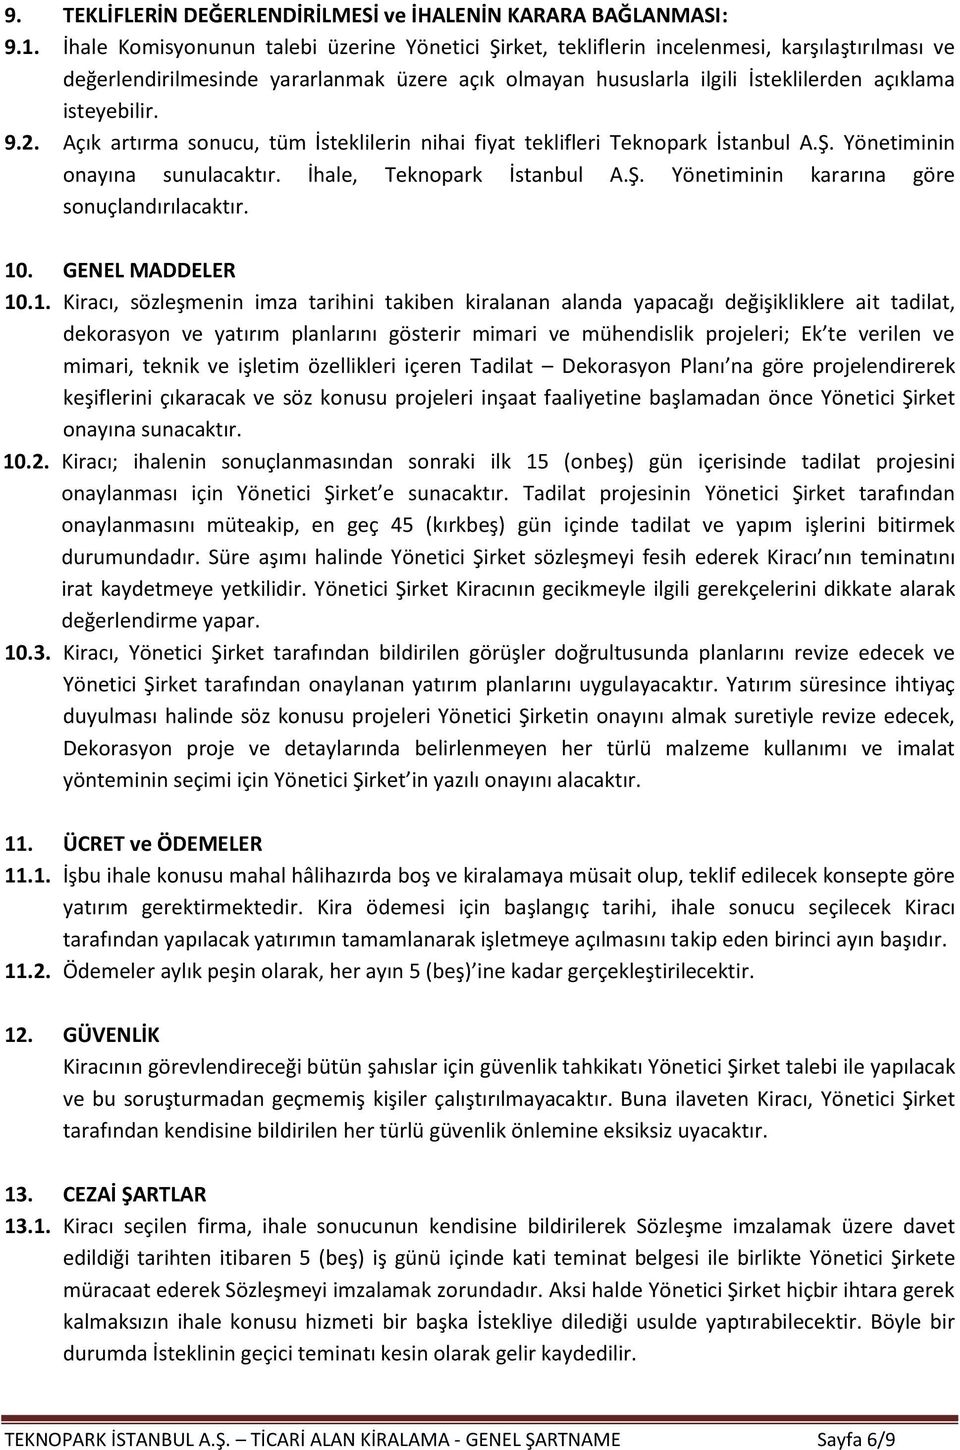 isteyebilir. 9.2. Açık artırma sonucu, tüm İsteklilerin nihai fiyat teklifleri Teknopark İstanbul A.Ş. Yönetiminin onayına sunulacaktır. İhale, Teknopark İstanbul A.Ş. Yönetiminin kararına göre sonuçlandırılacaktır.